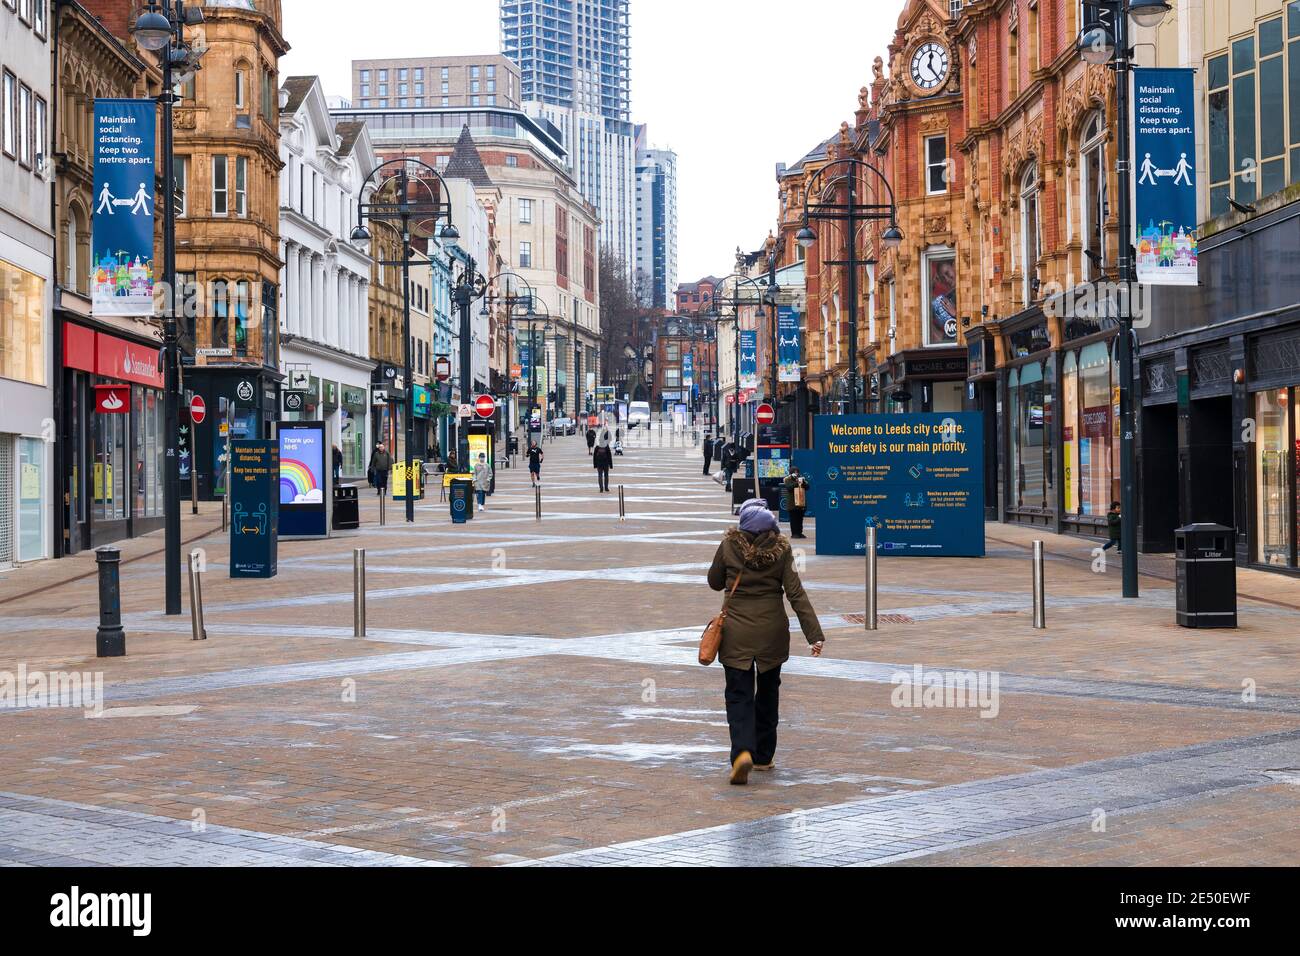 La strada principale del Regno Unito è molto tranquilla, con la mancanza di acquirenti e la maggior parte dei negozi chiusi, durante la chiusura a causa del Covid 19. 24 Gennaio 2021 a Briggate, Leeds, West Yorkshire Foto Stock